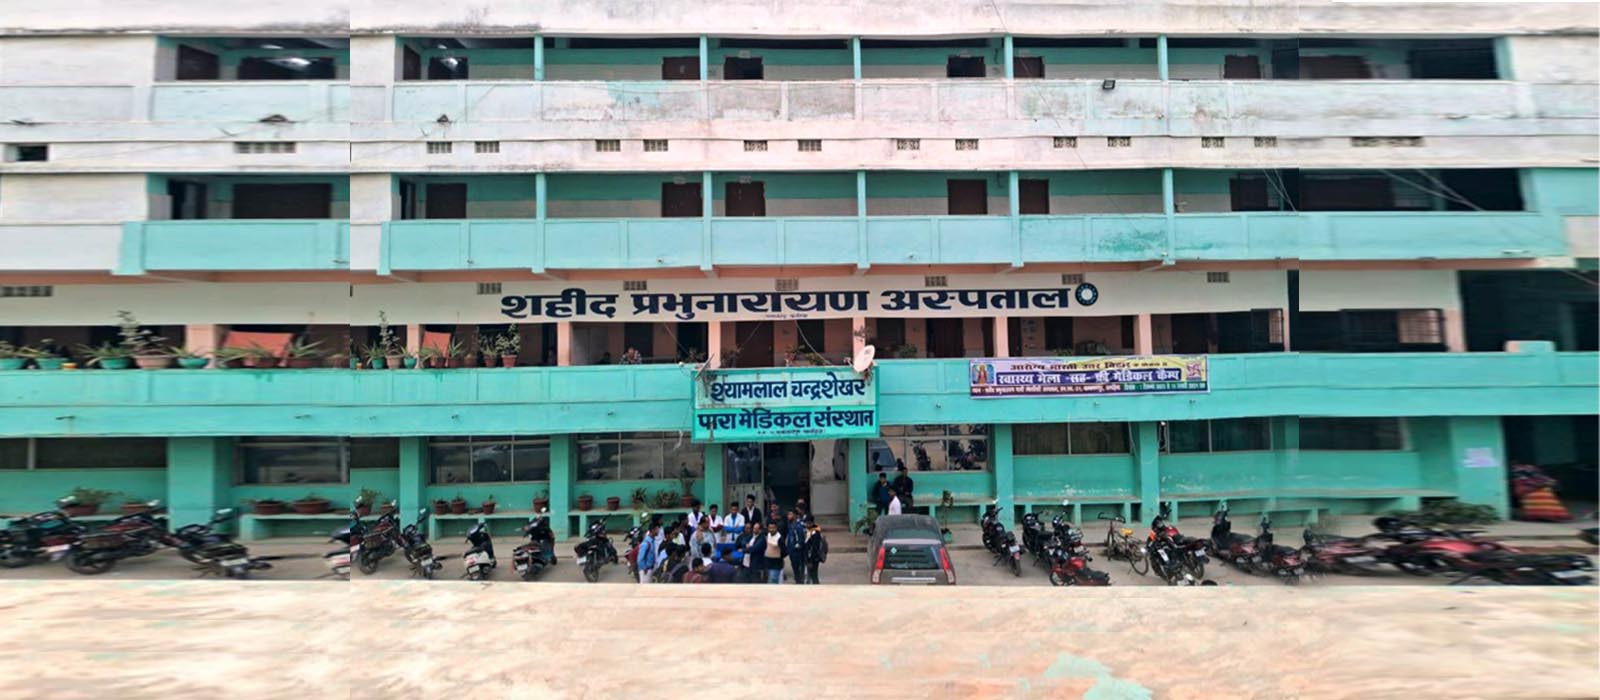 Shyamlal Chandrasekhar Paramedical Institute, Khagaria